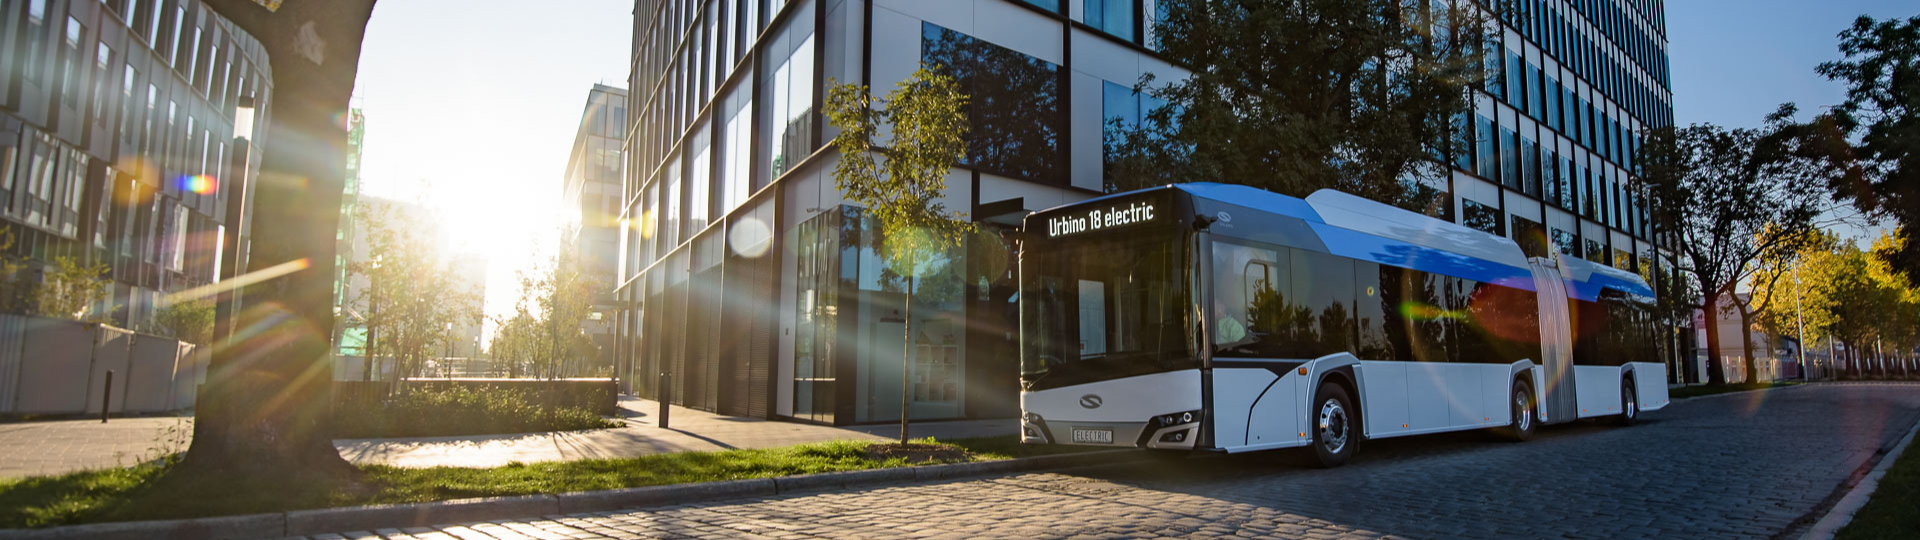 Aarhus ponownie zamawia autobusy elektryczne Solaris